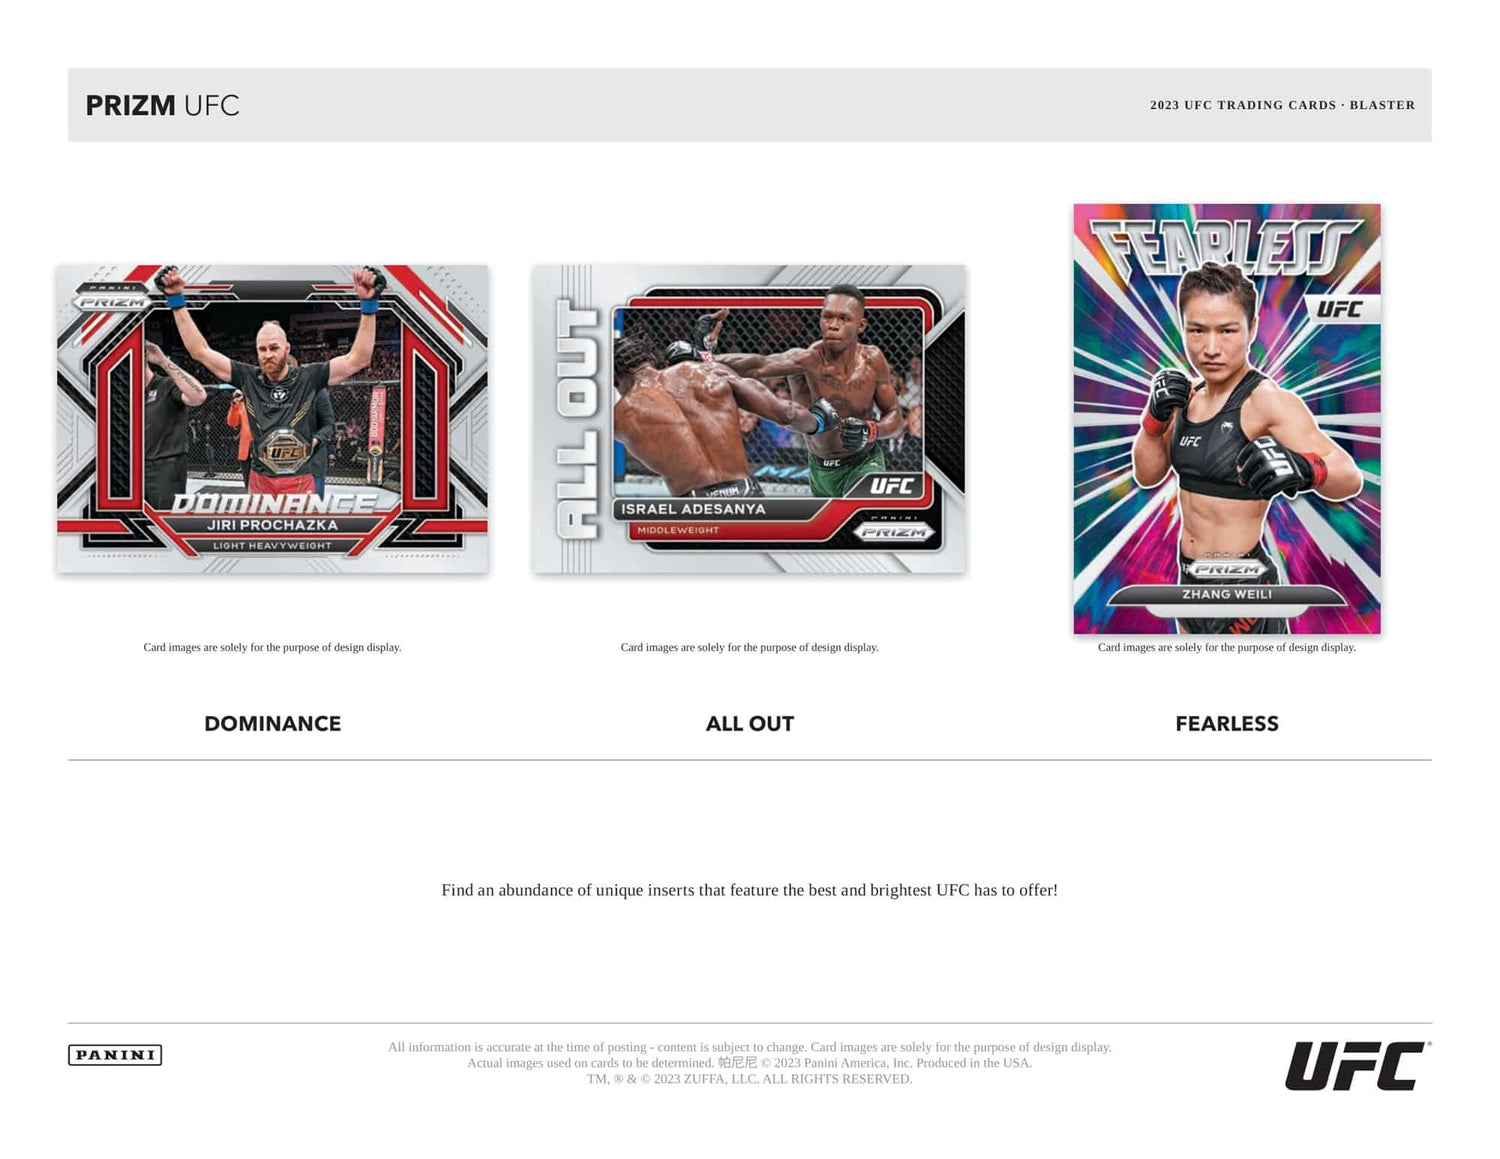 Panini Prizm UFC 6-Pack Blaster Box 2023 UFC Inserts